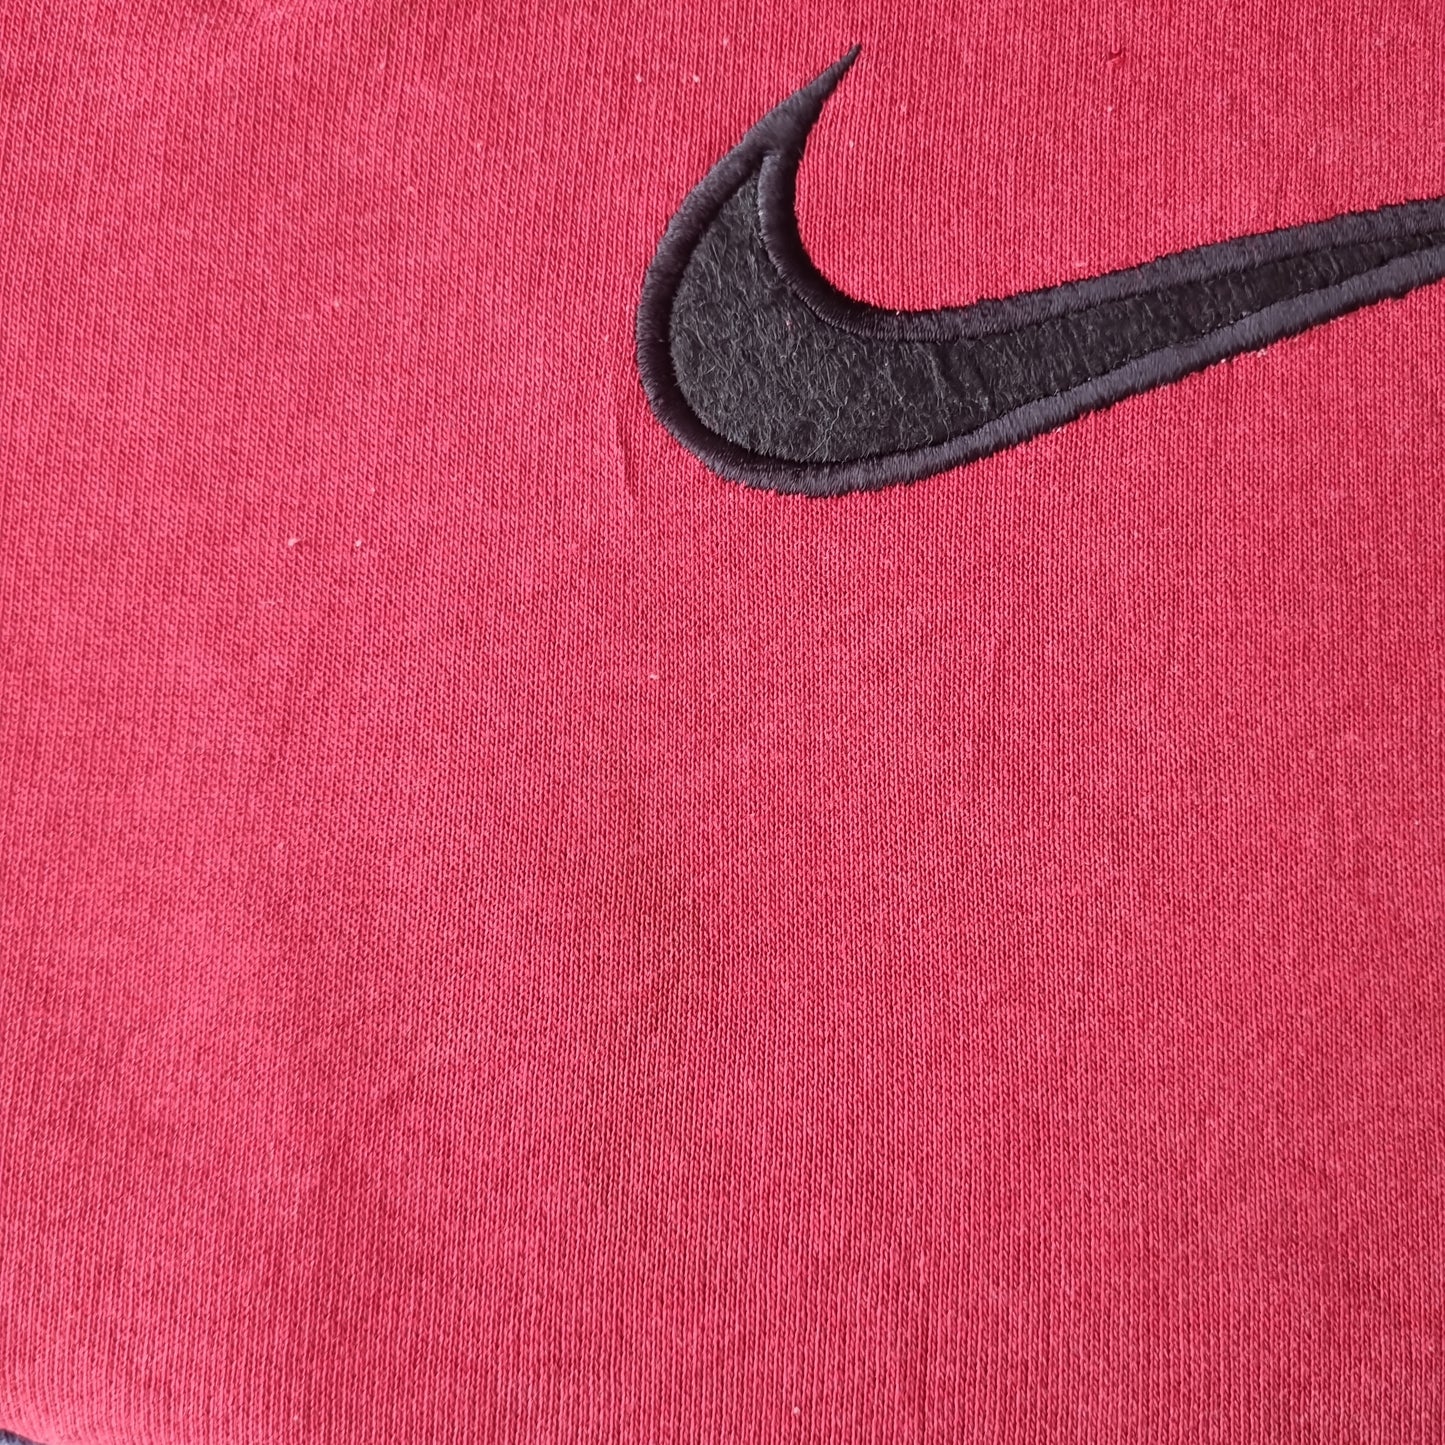 Nike épelle le pull retravaillé taille M